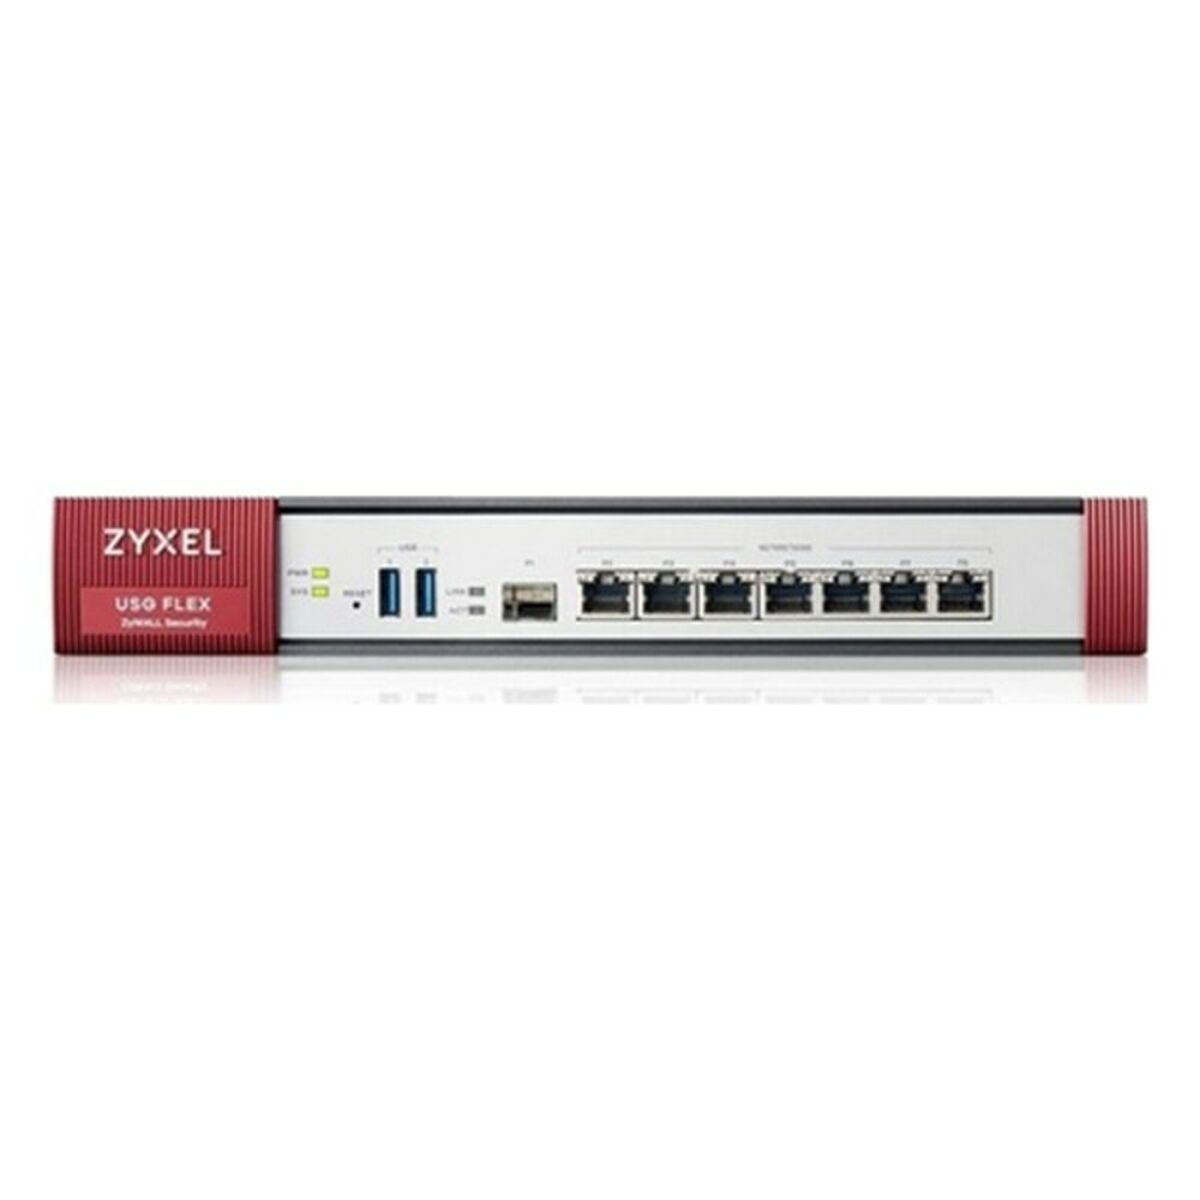 Firewall ZYXEL USGFLEX500-EU0102F